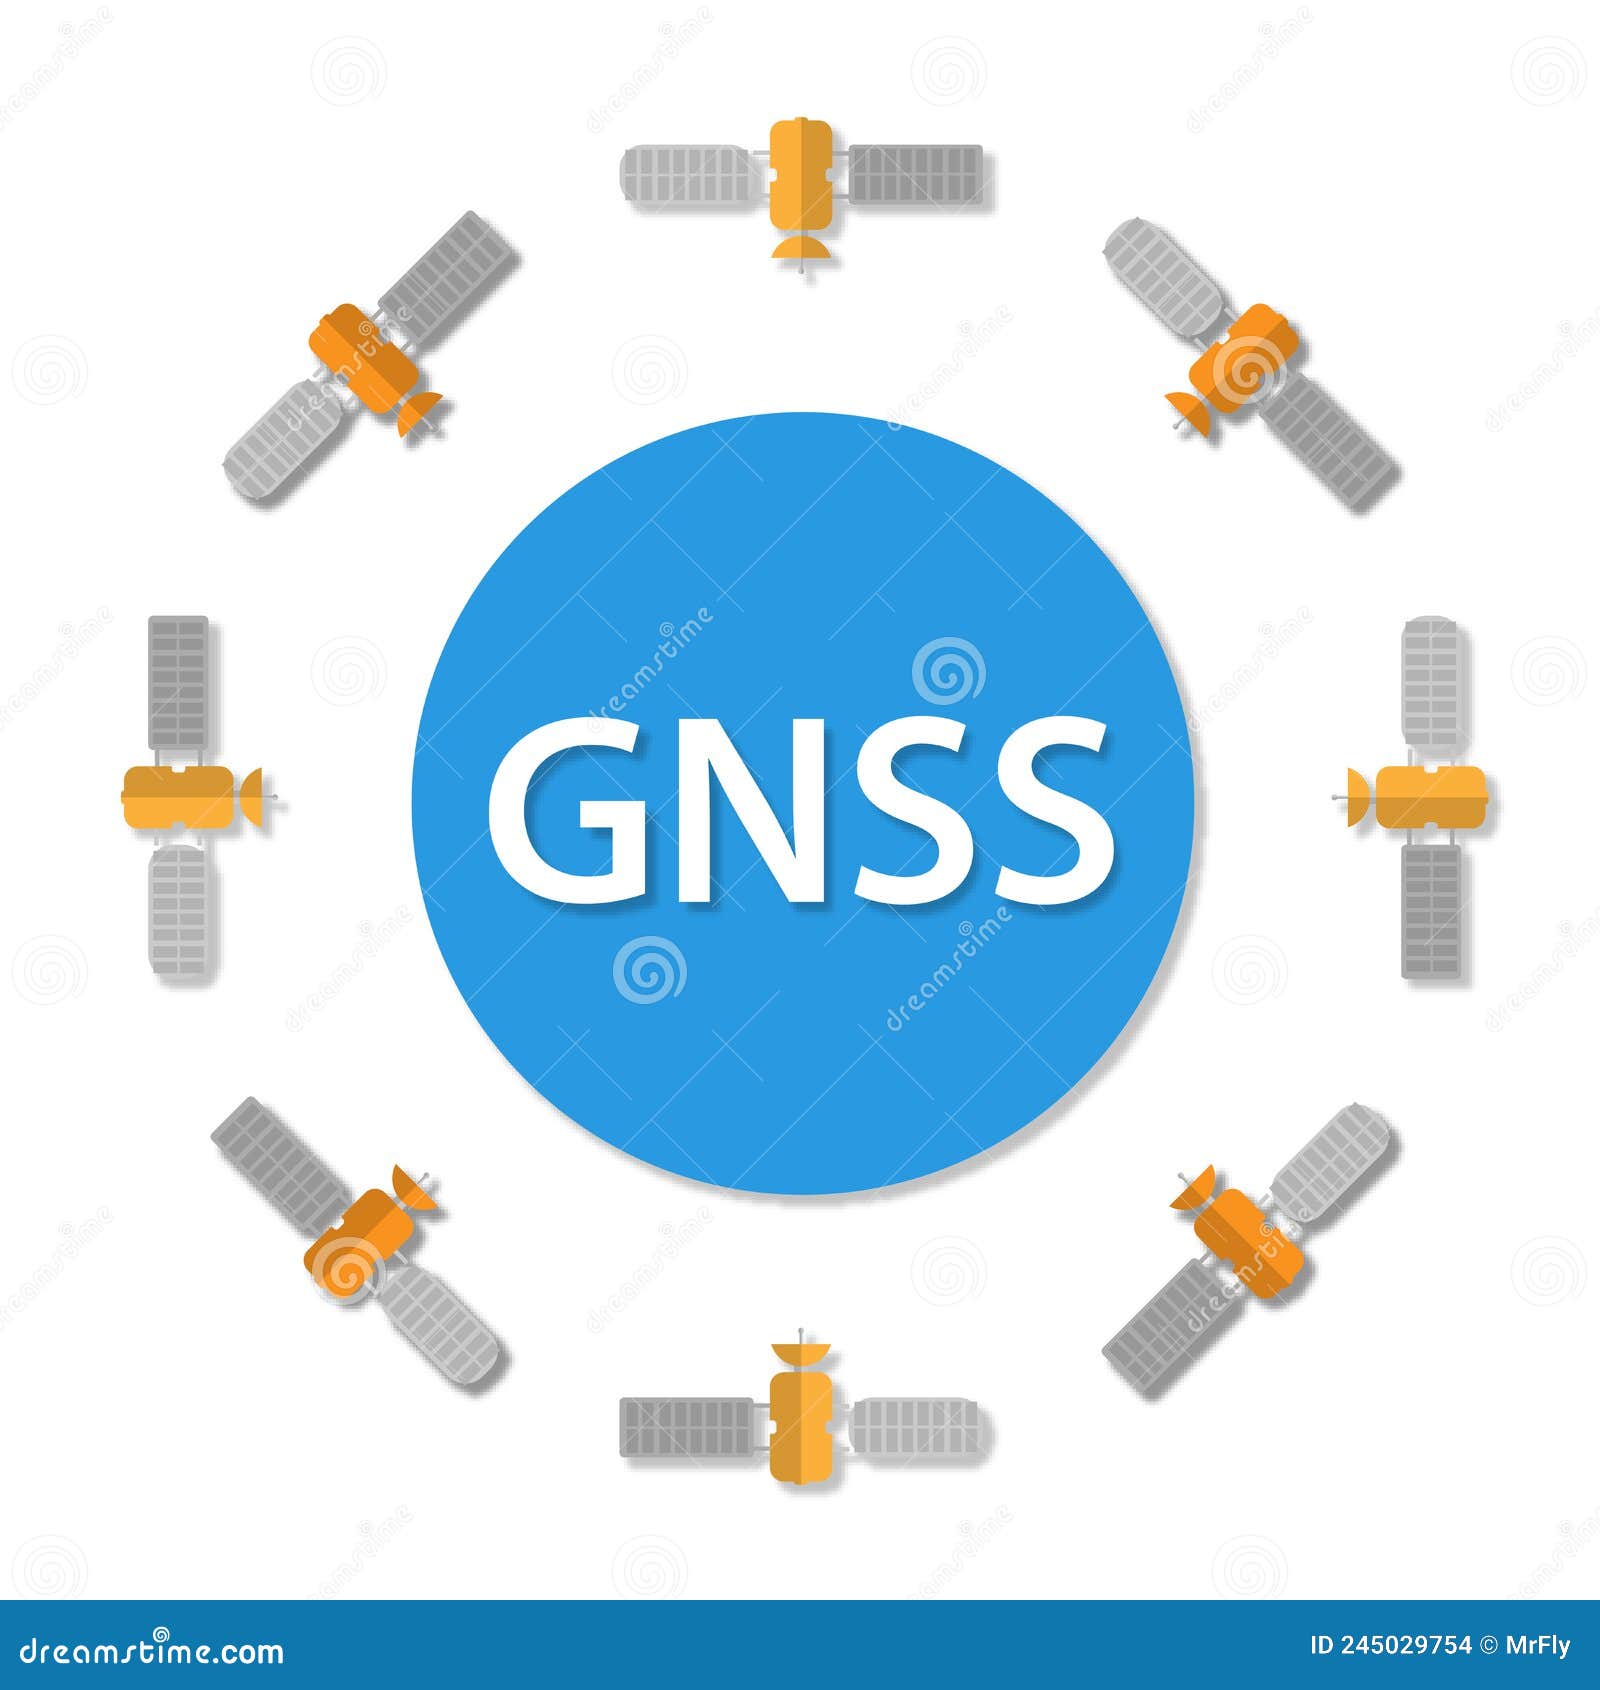 gnss satelite formation around globe